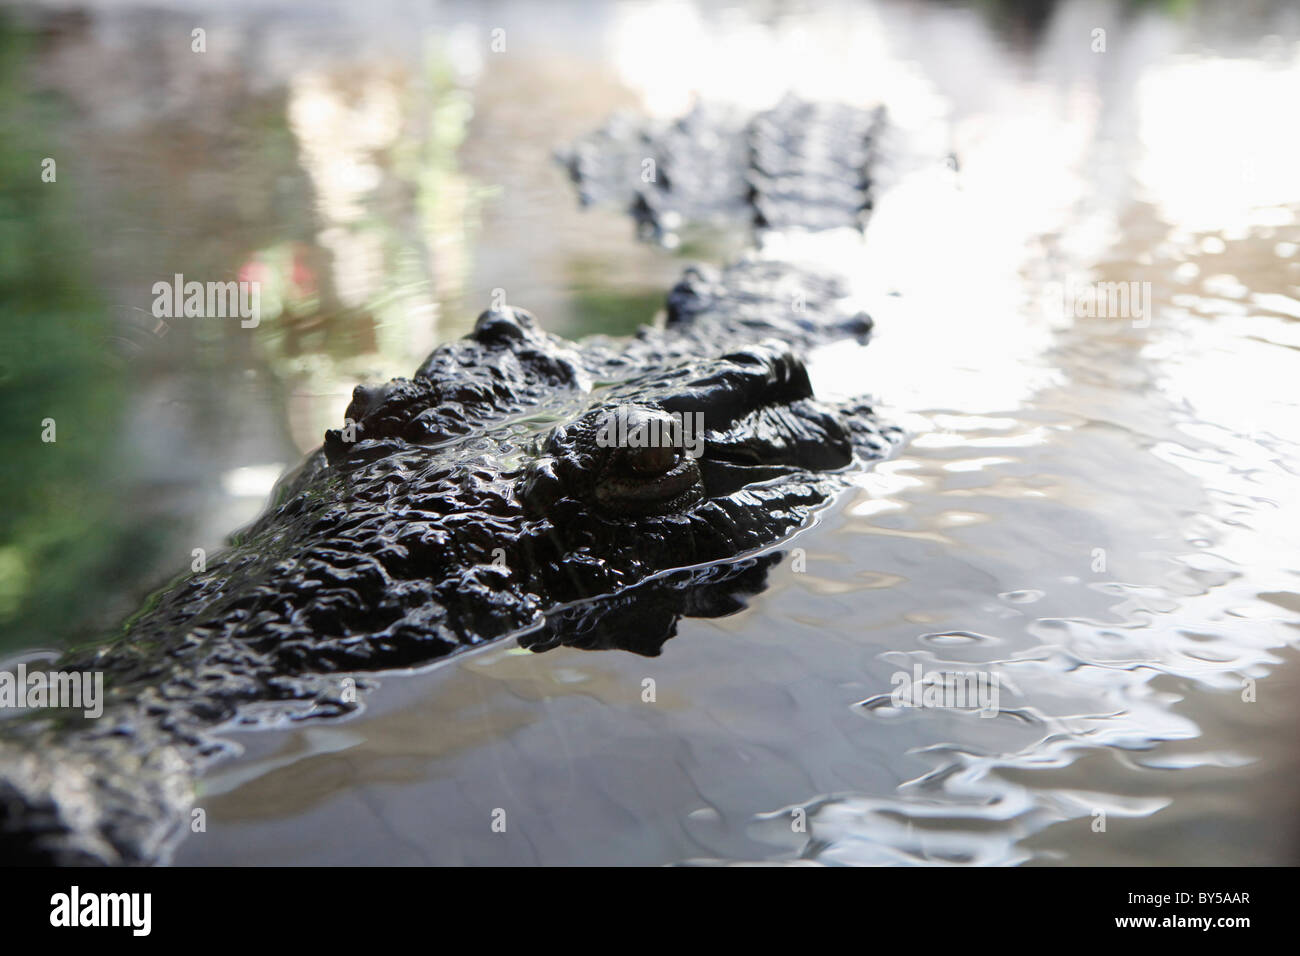 Detail von einem Alligator im Wasser Stockfoto